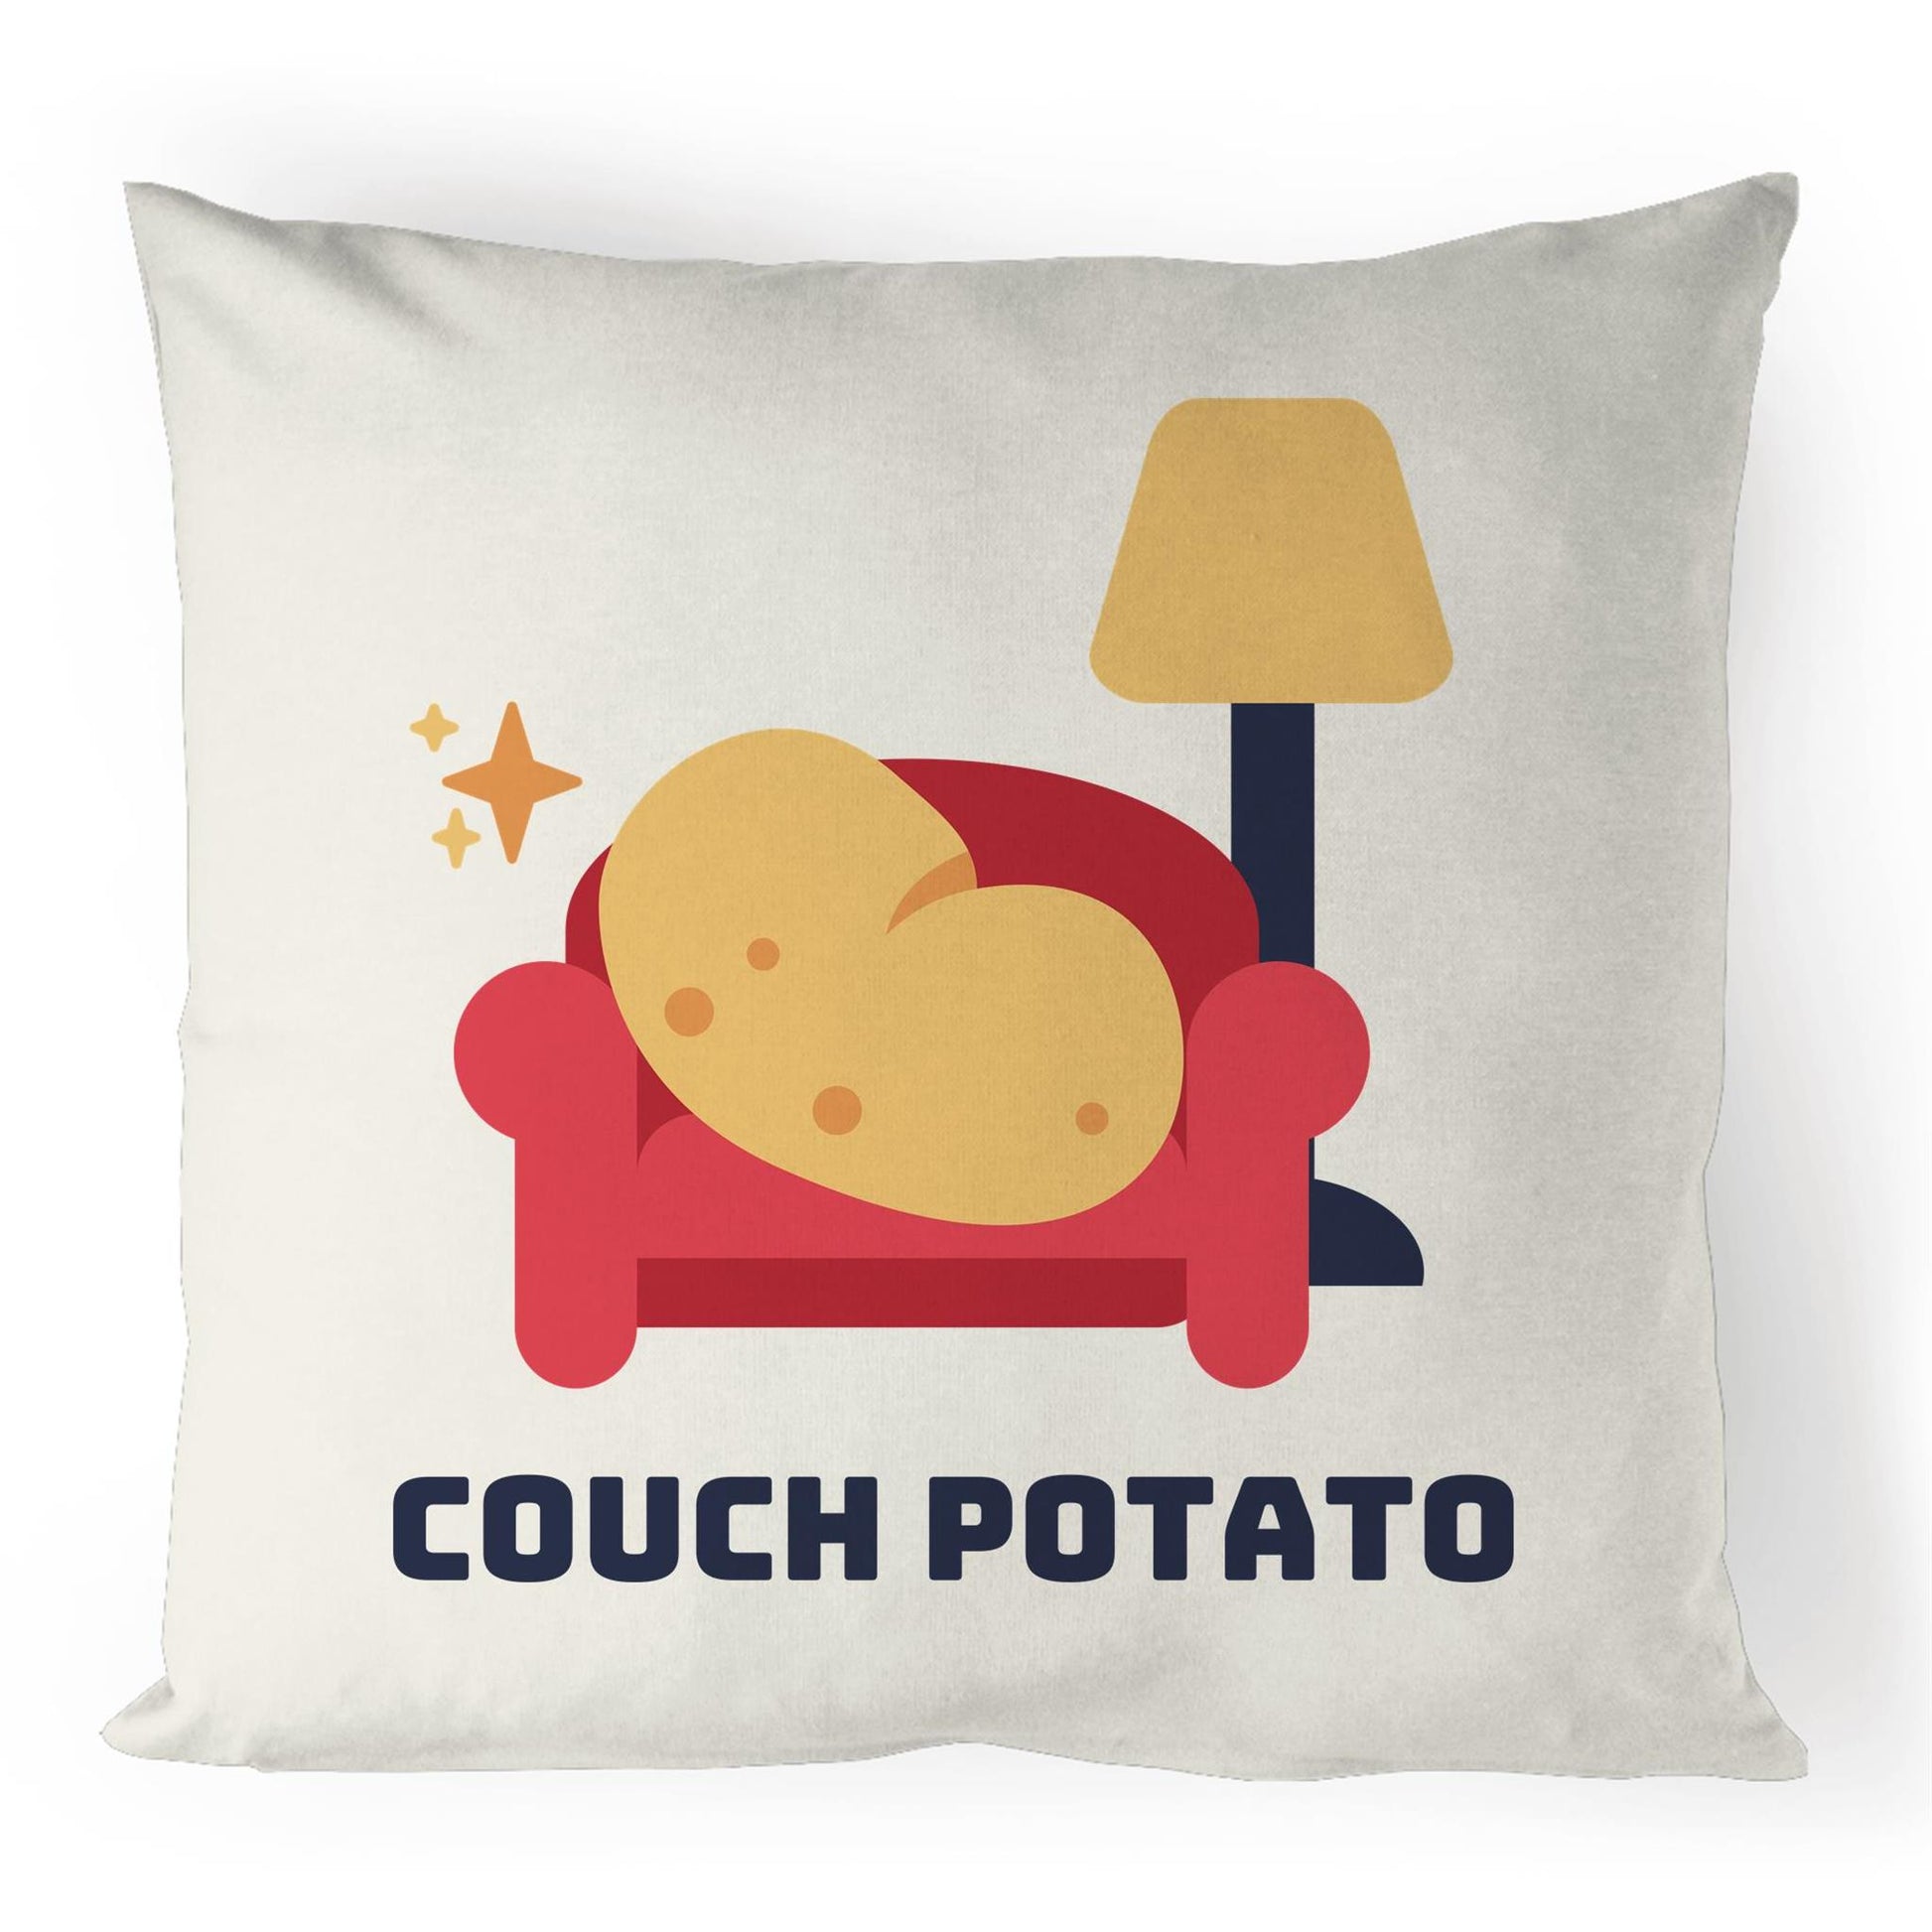 Couch Potato - 100% Linen Cushion Cover Default Title Linen Cushion Cover